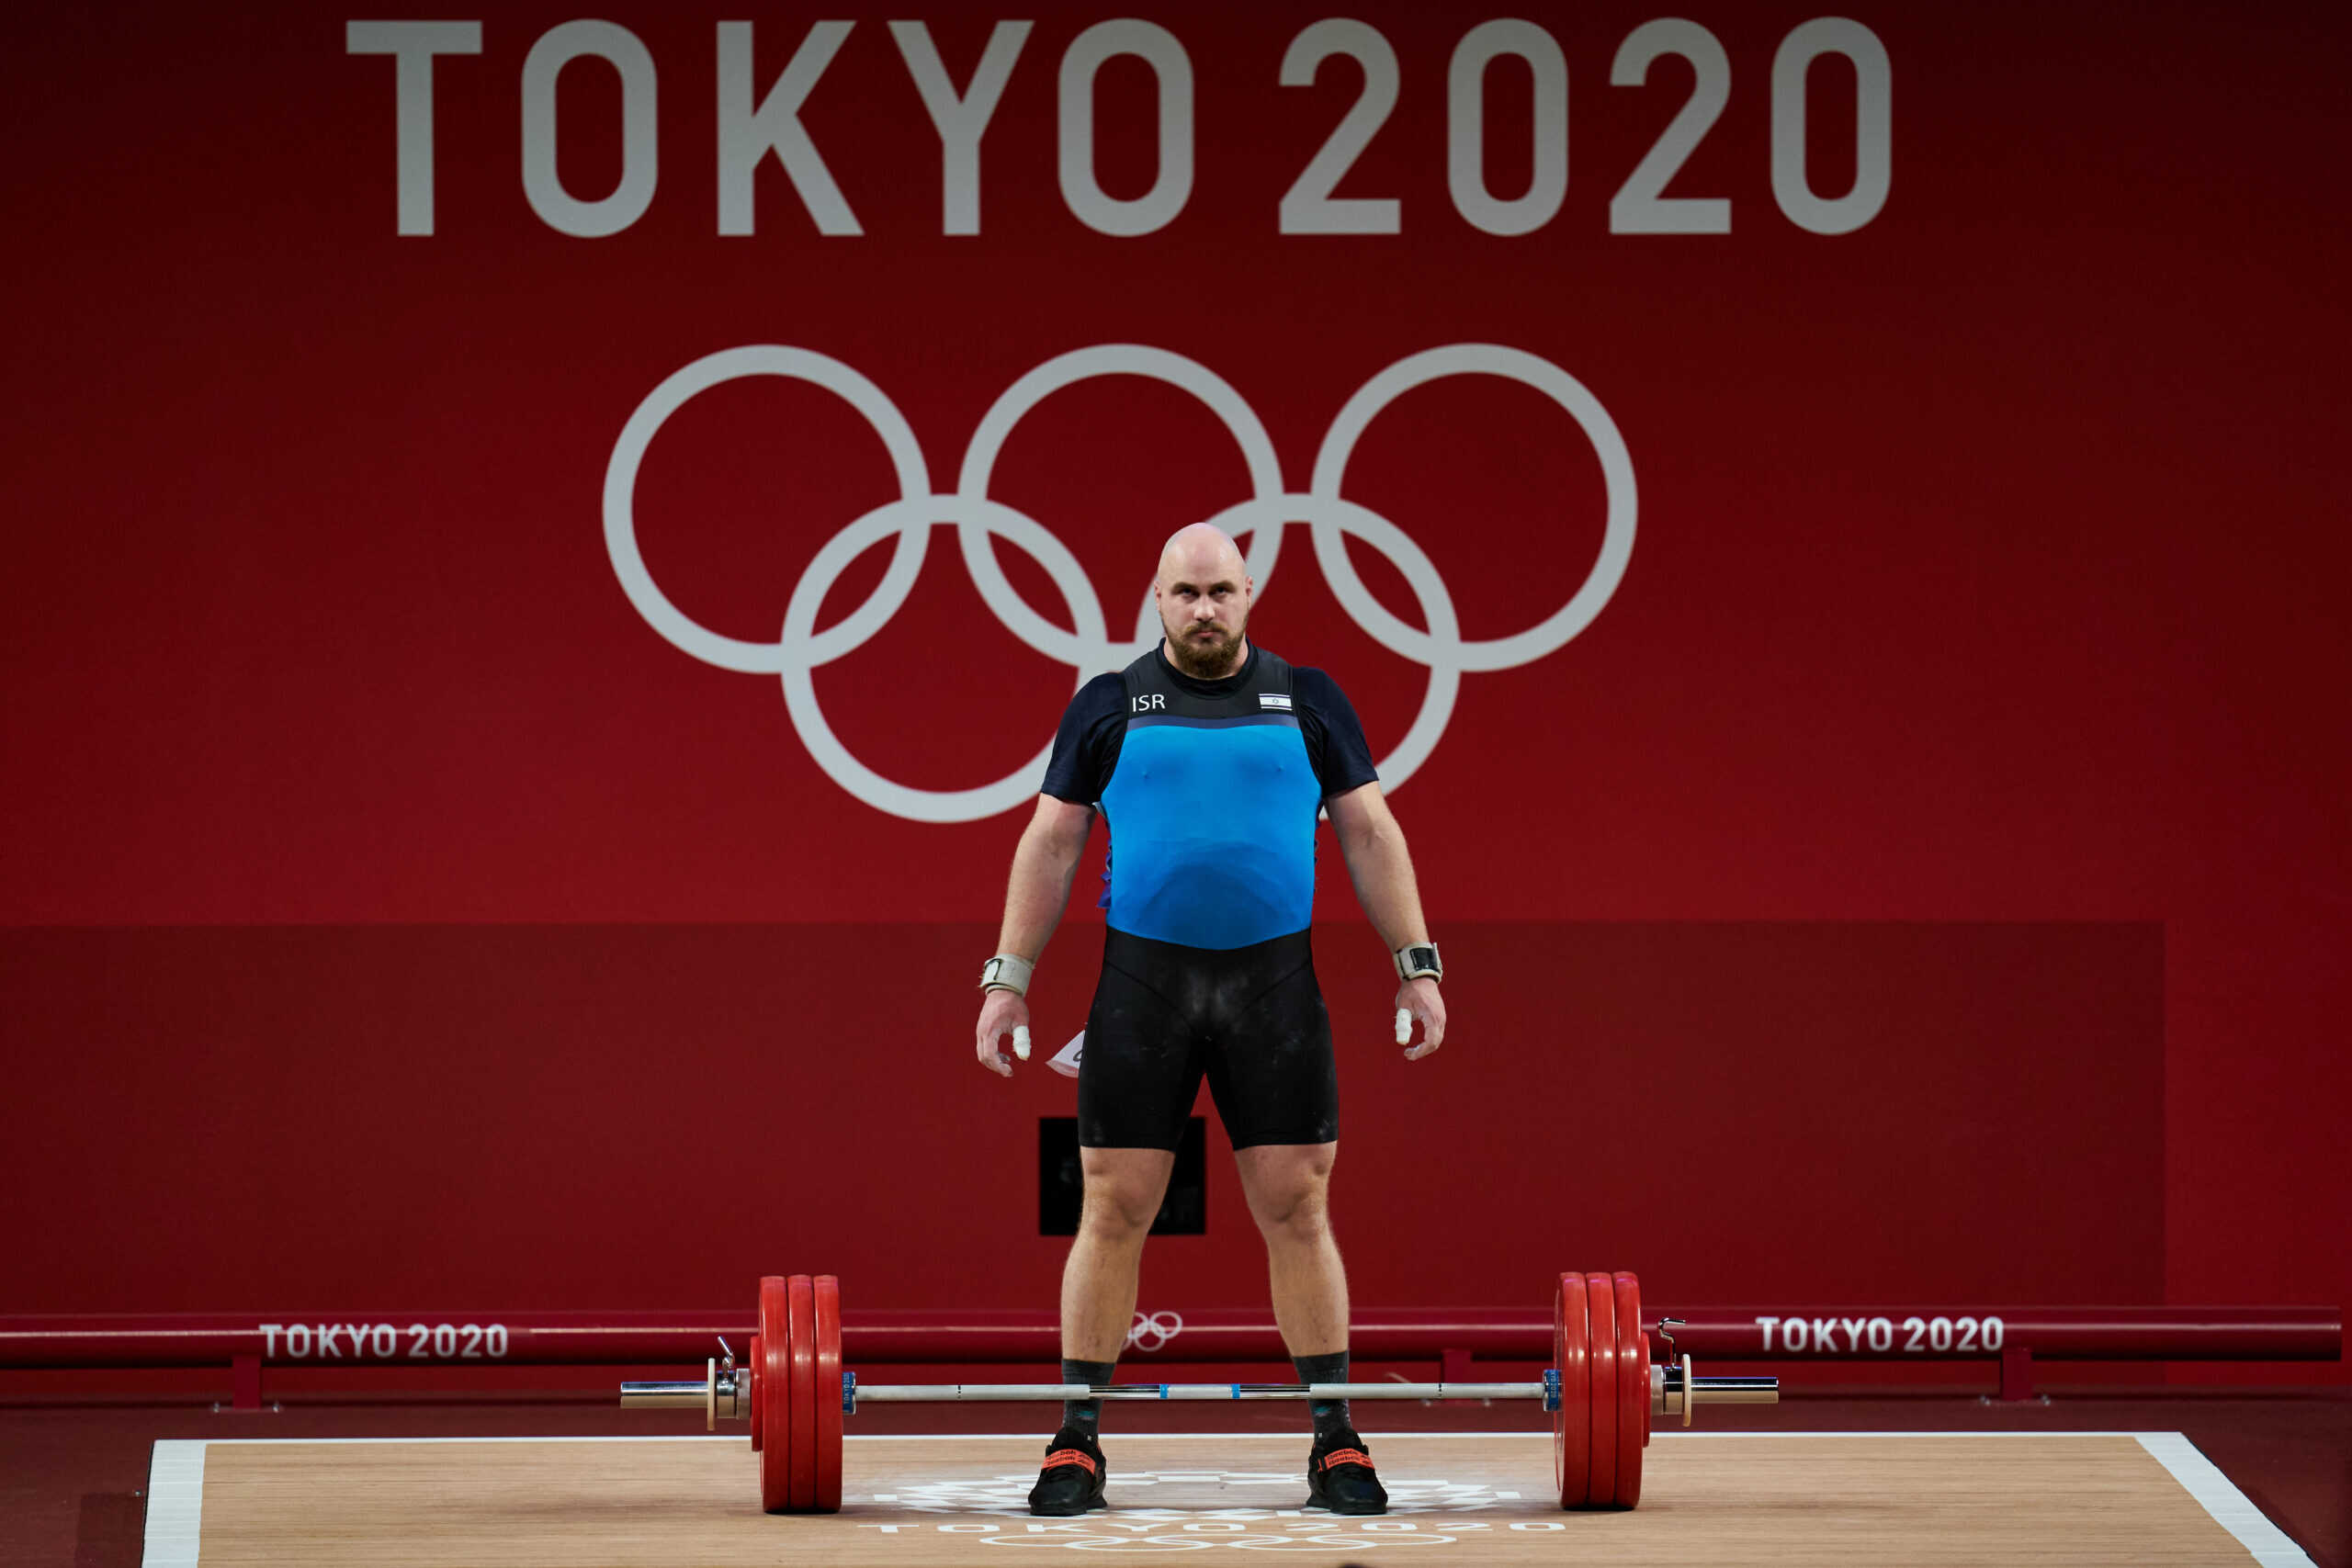 דוד ליטבינוב באולימפיאדת טוקיו. האם יימנע ממנו לשחזר זאת בפריז?